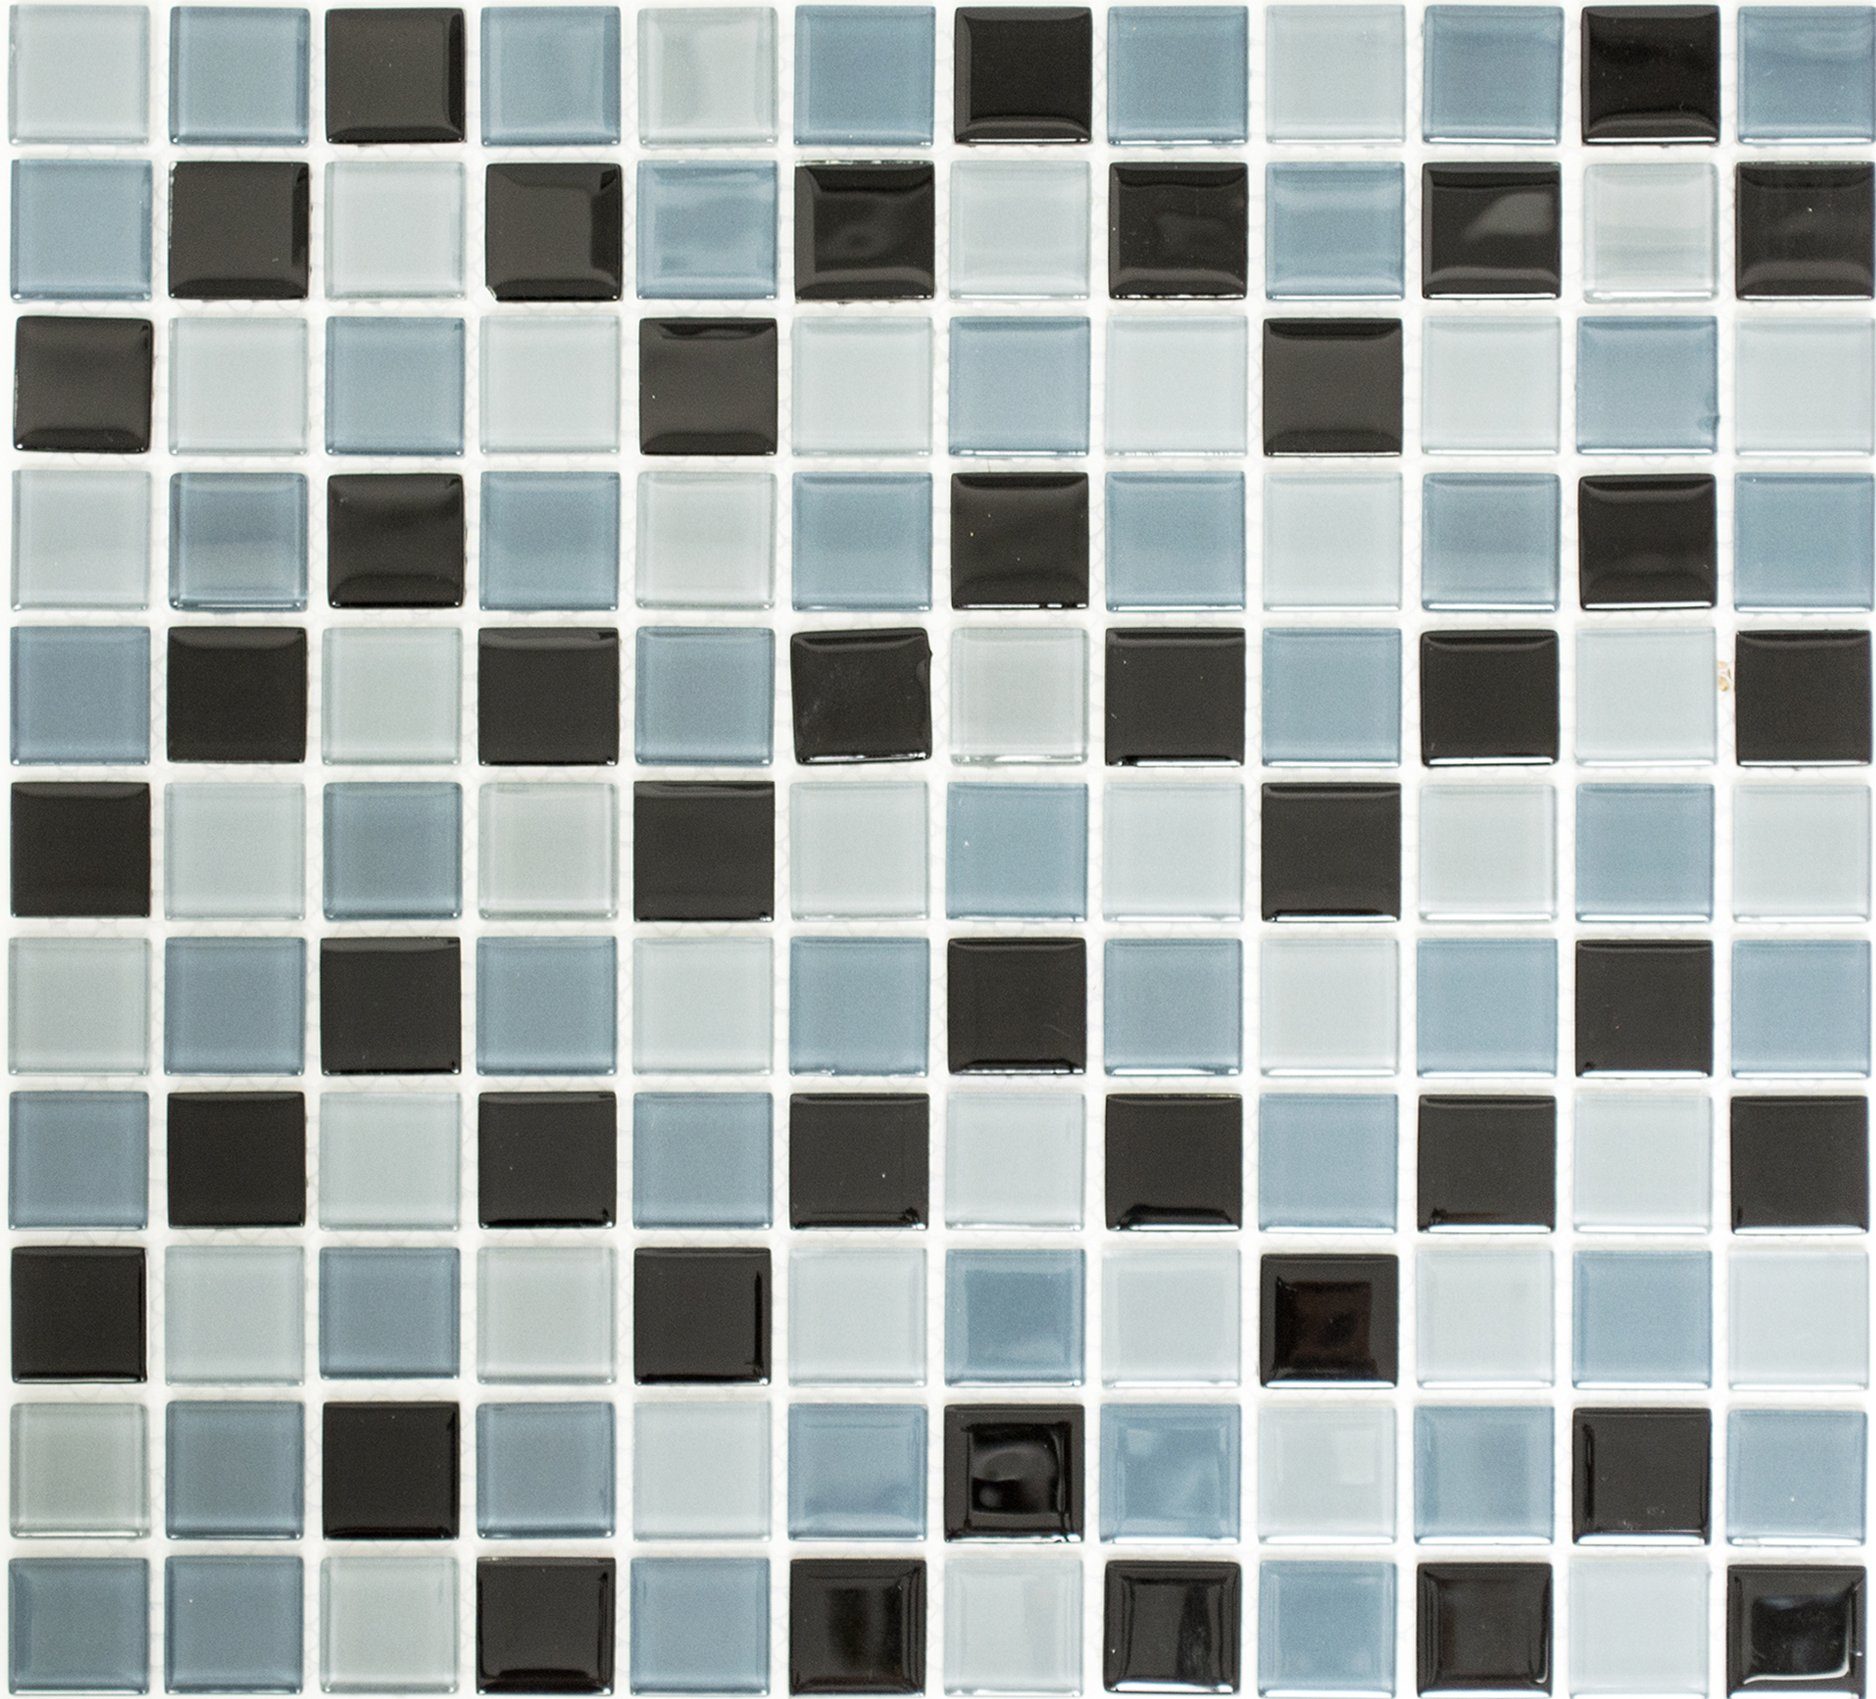 Mosani Mosaikfliesen Mosaik Fliesen Glasmosaik grau anthrazit schwarz BAD WC